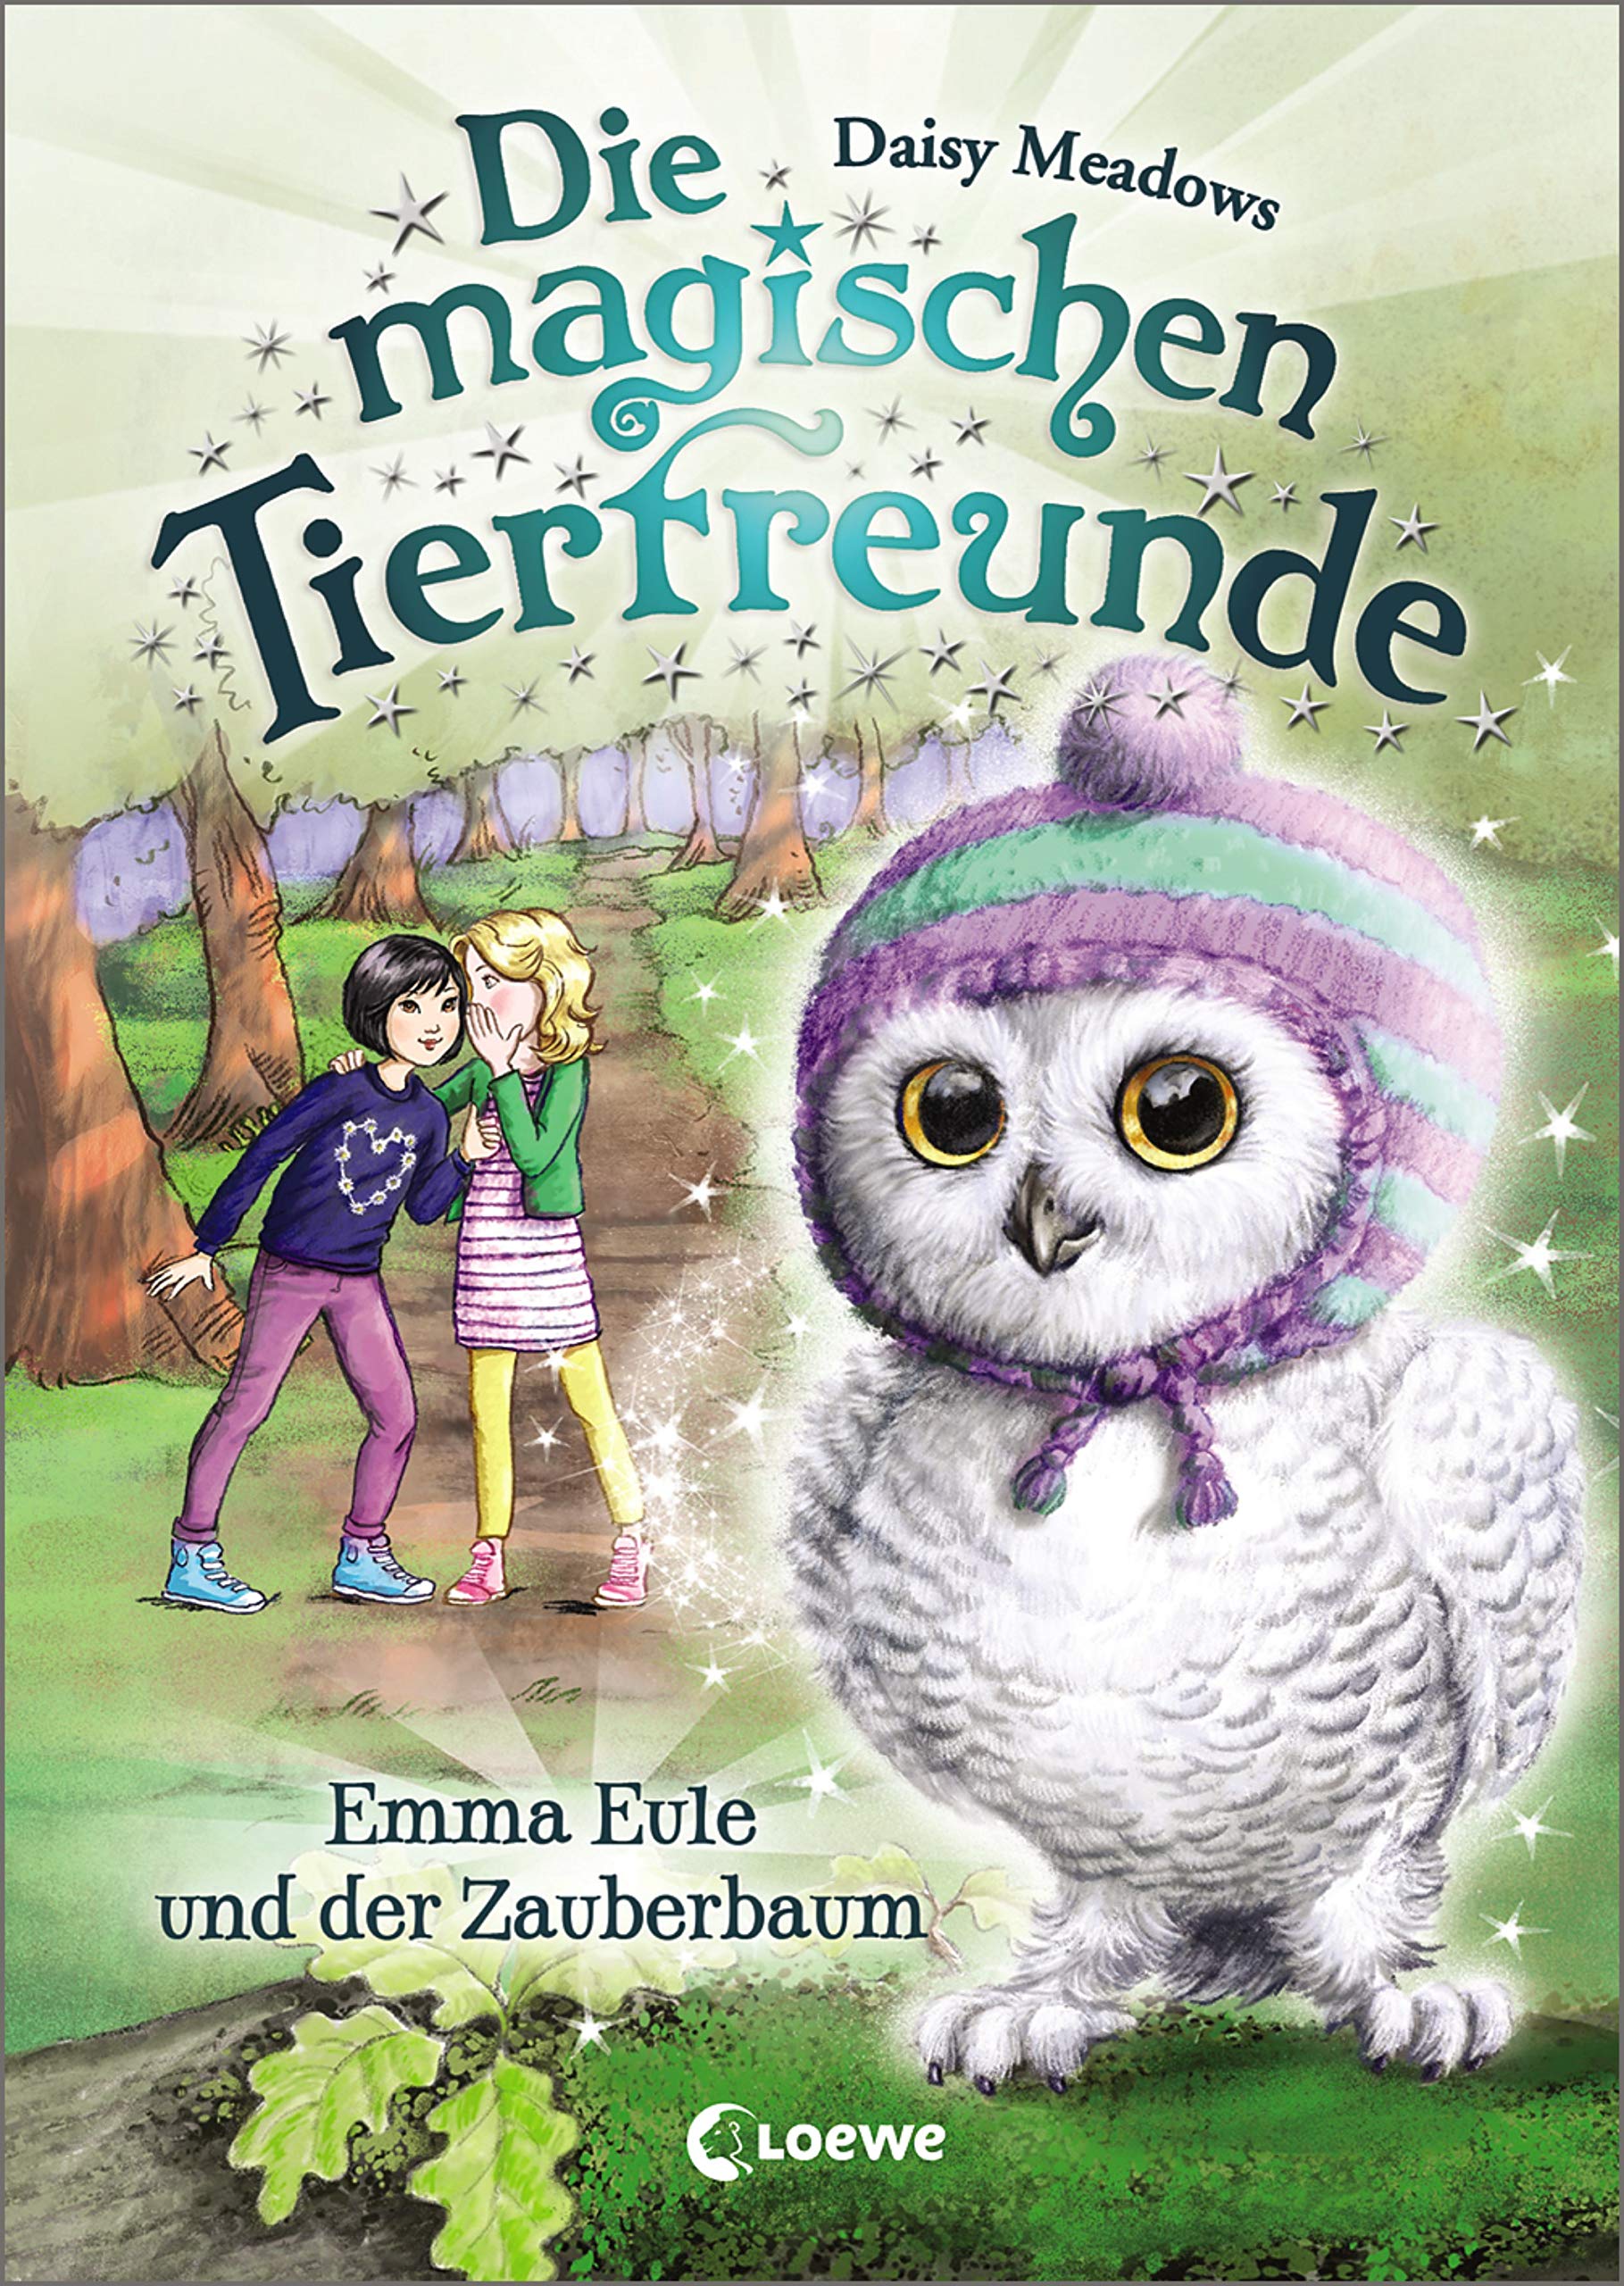 Die magischen Tierfreunde (Band 11) - Emma Eule und der Zauberbaum: ab 7 Jahre (German Edition)